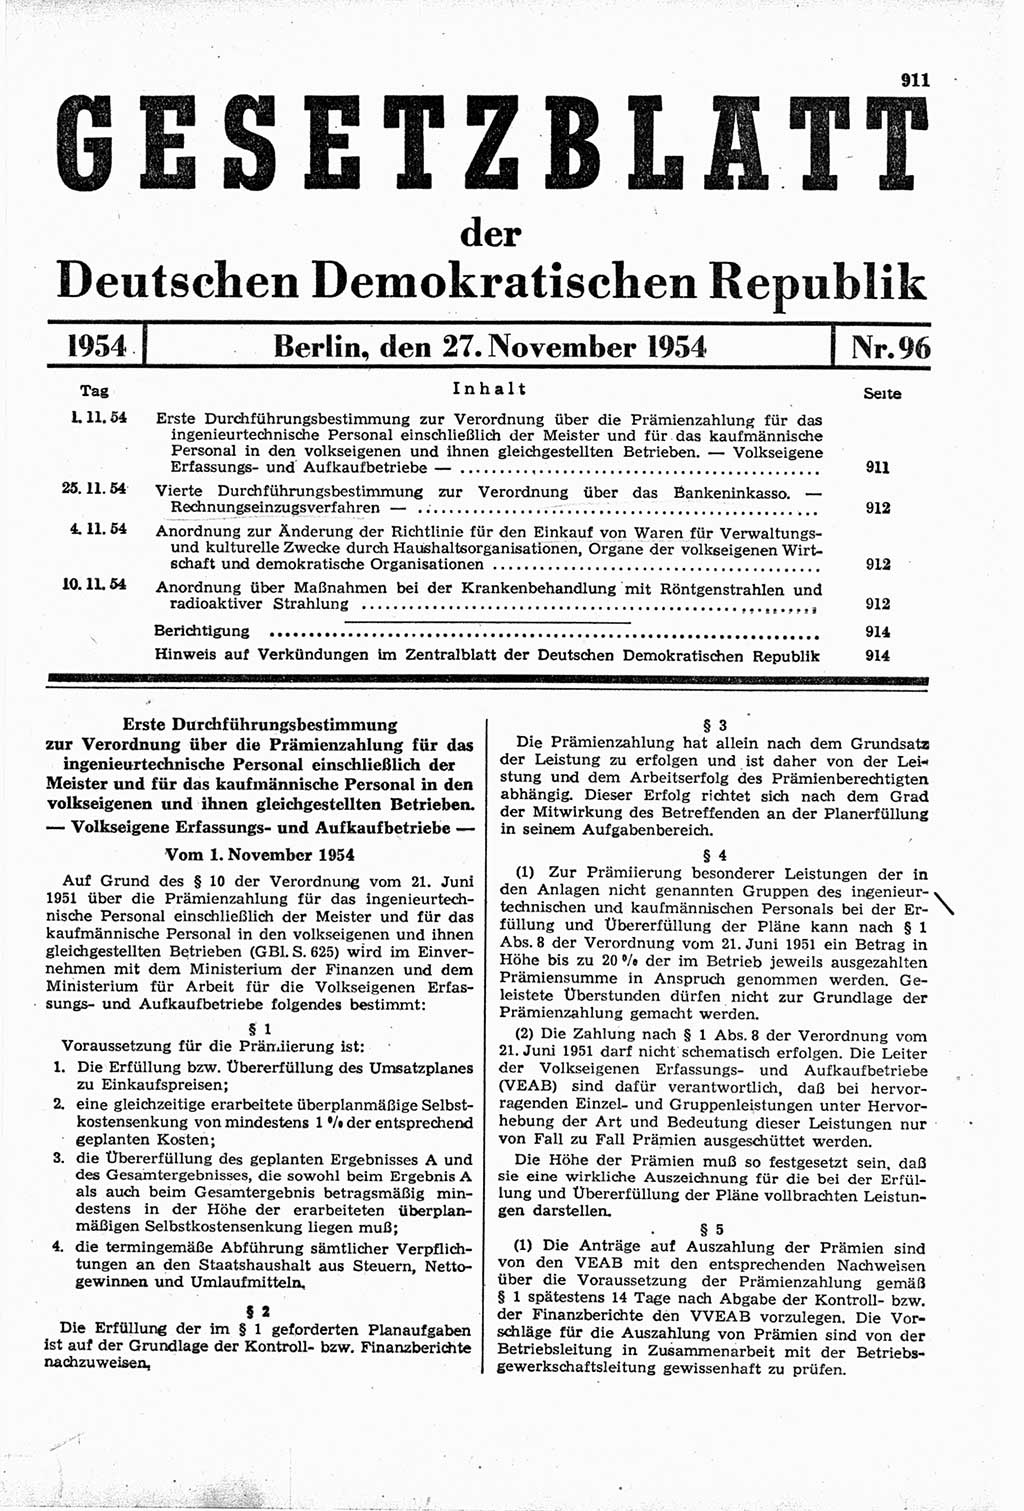 Gesetzblatt (GBl.) der Deutschen Demokratischen Republik (DDR) 1954, Seite 911 (GBl. DDR 1954, S. 911)